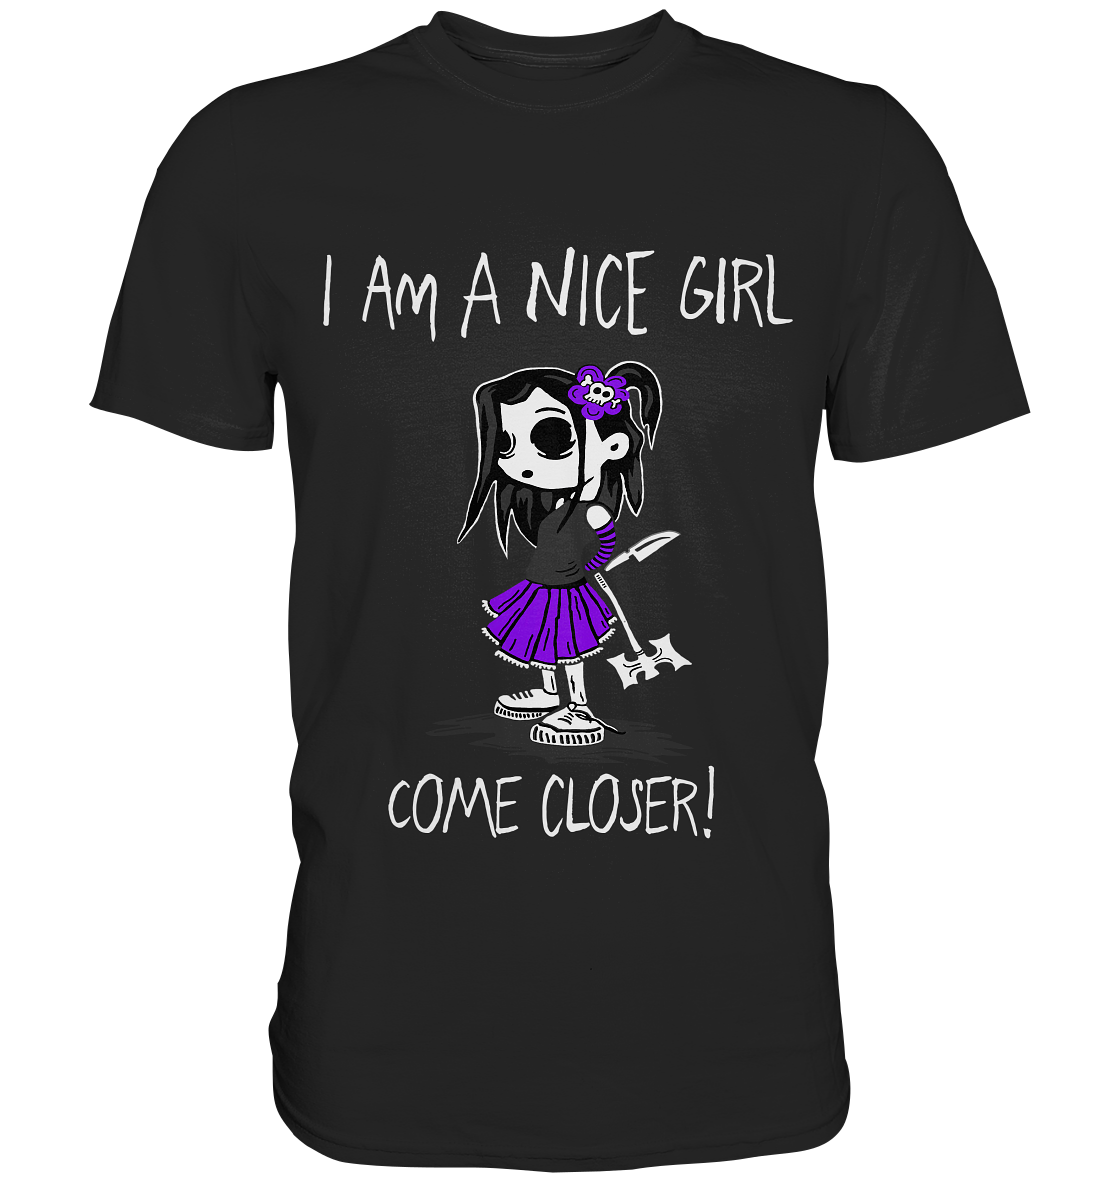 I am a nice girl. Come closer! - Unisex Premium Shirt